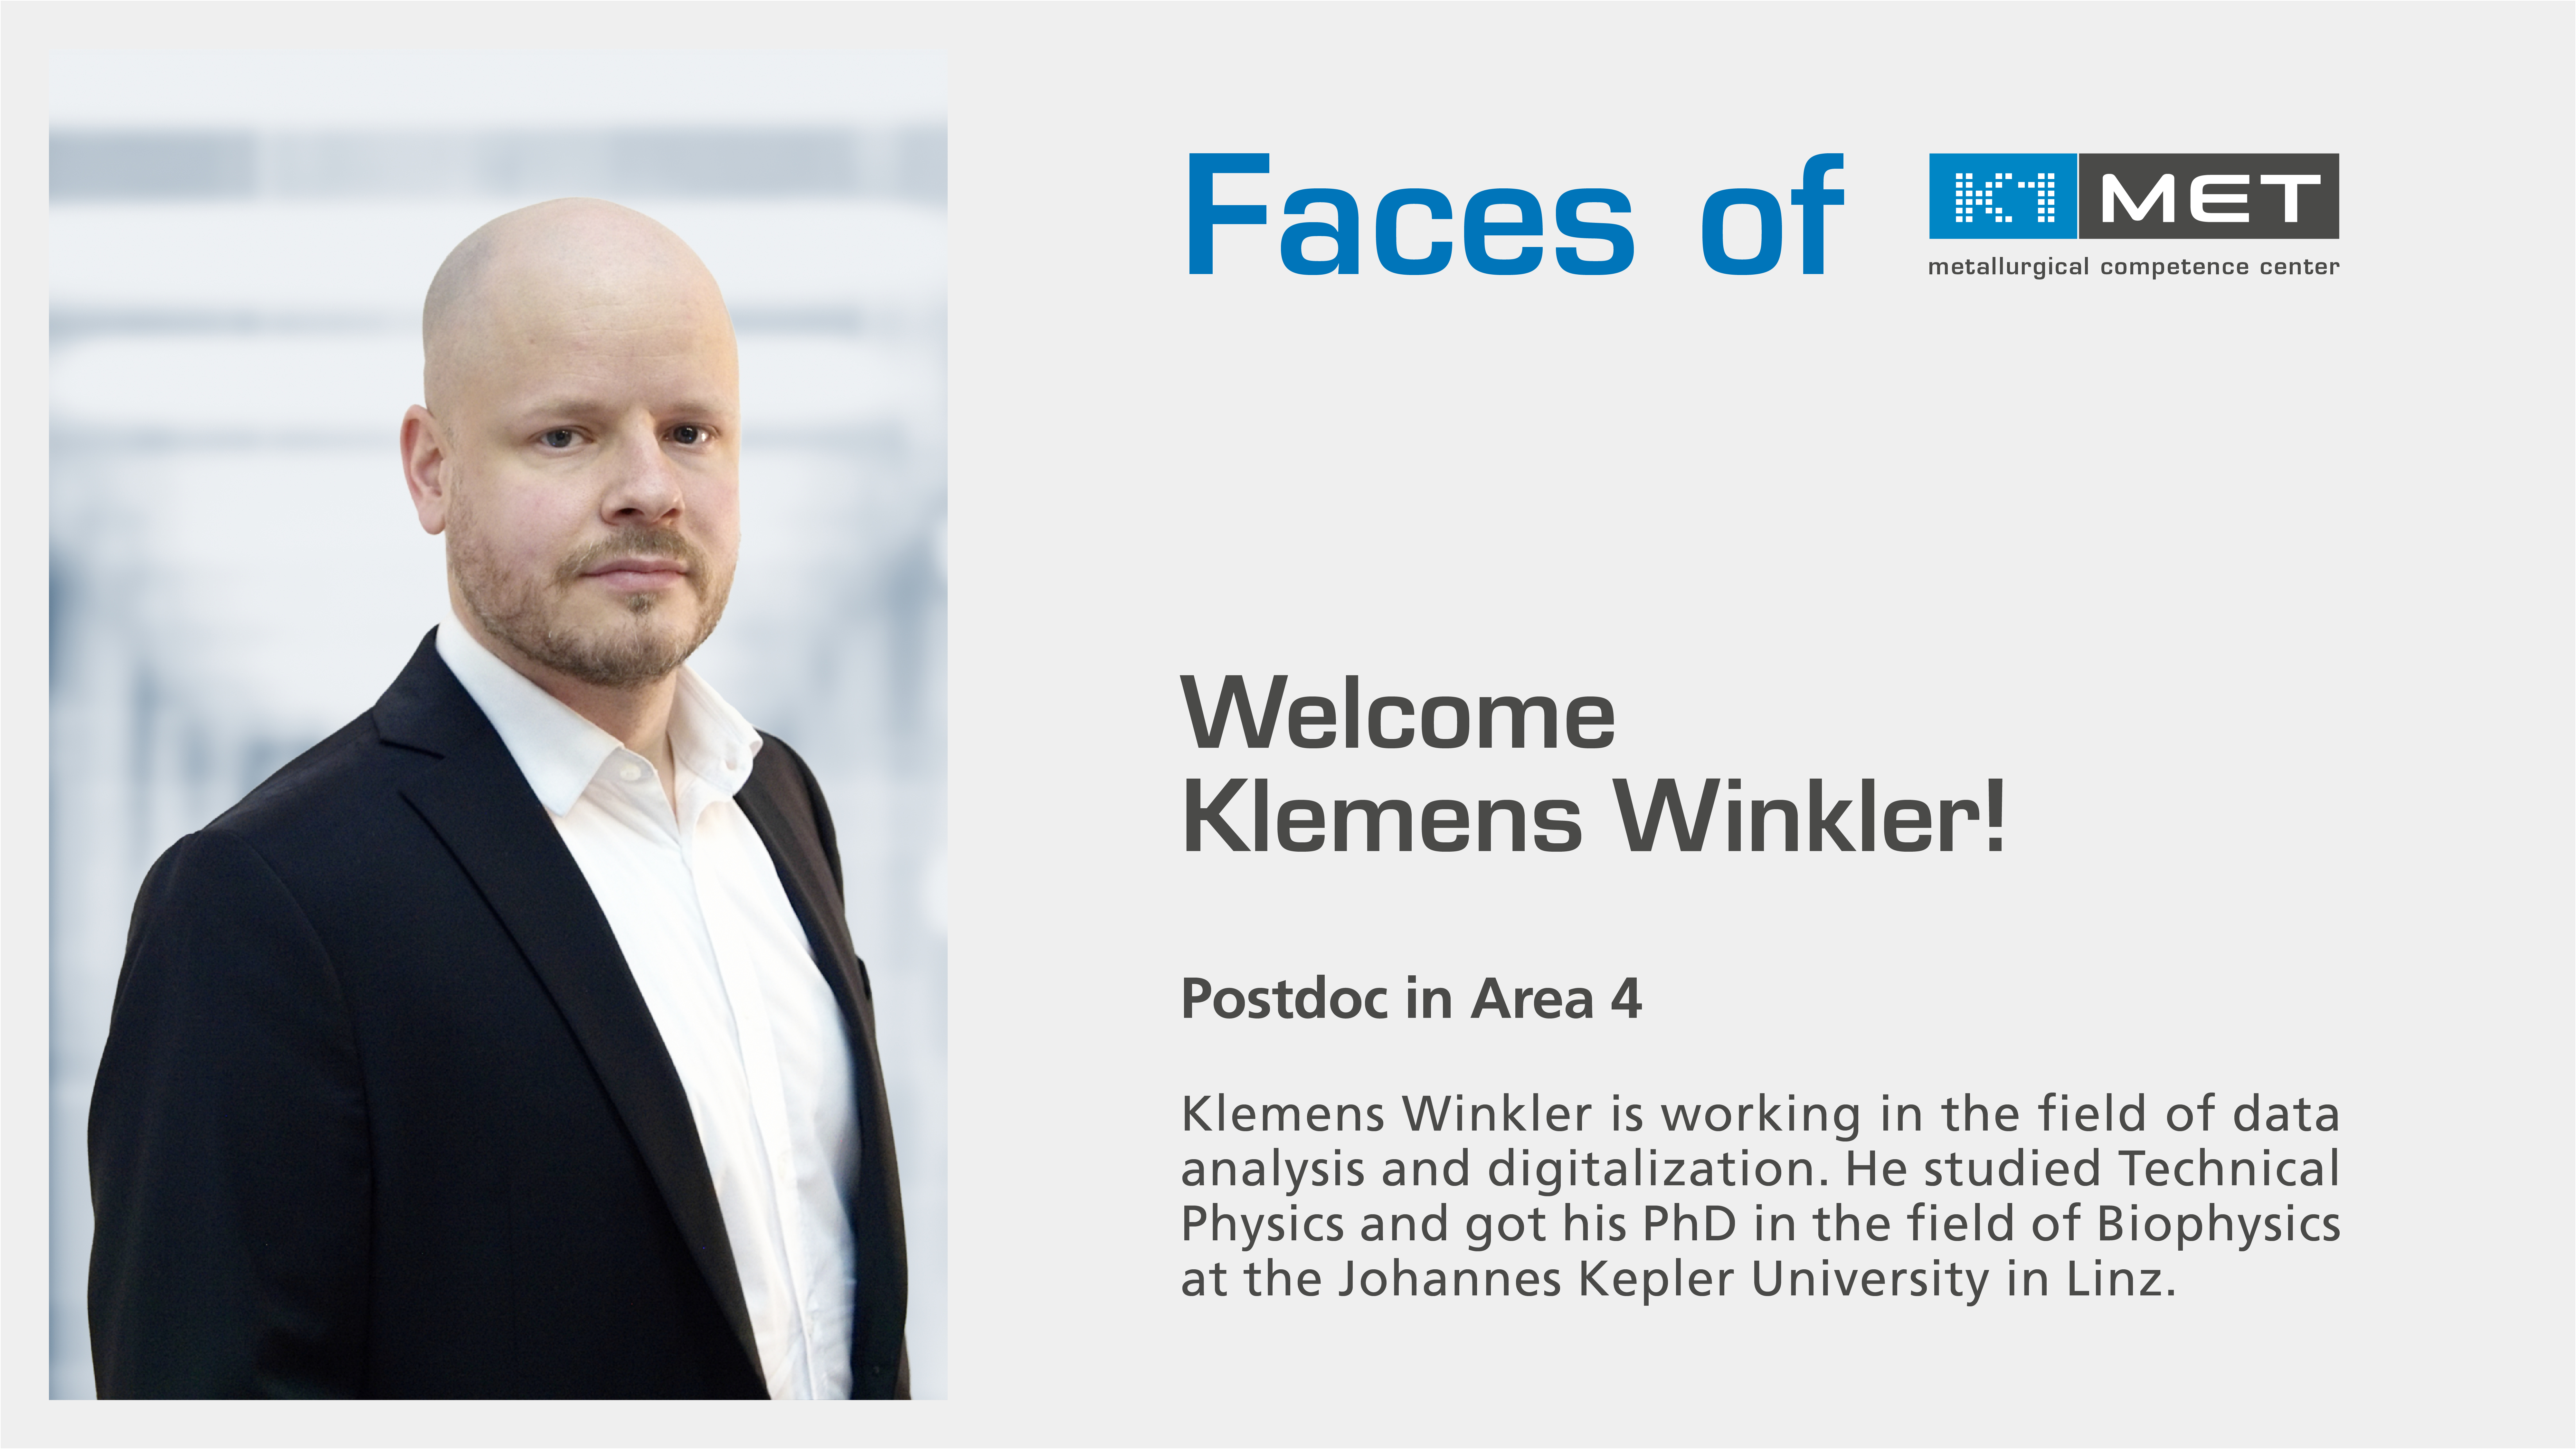 Klemens Winkler